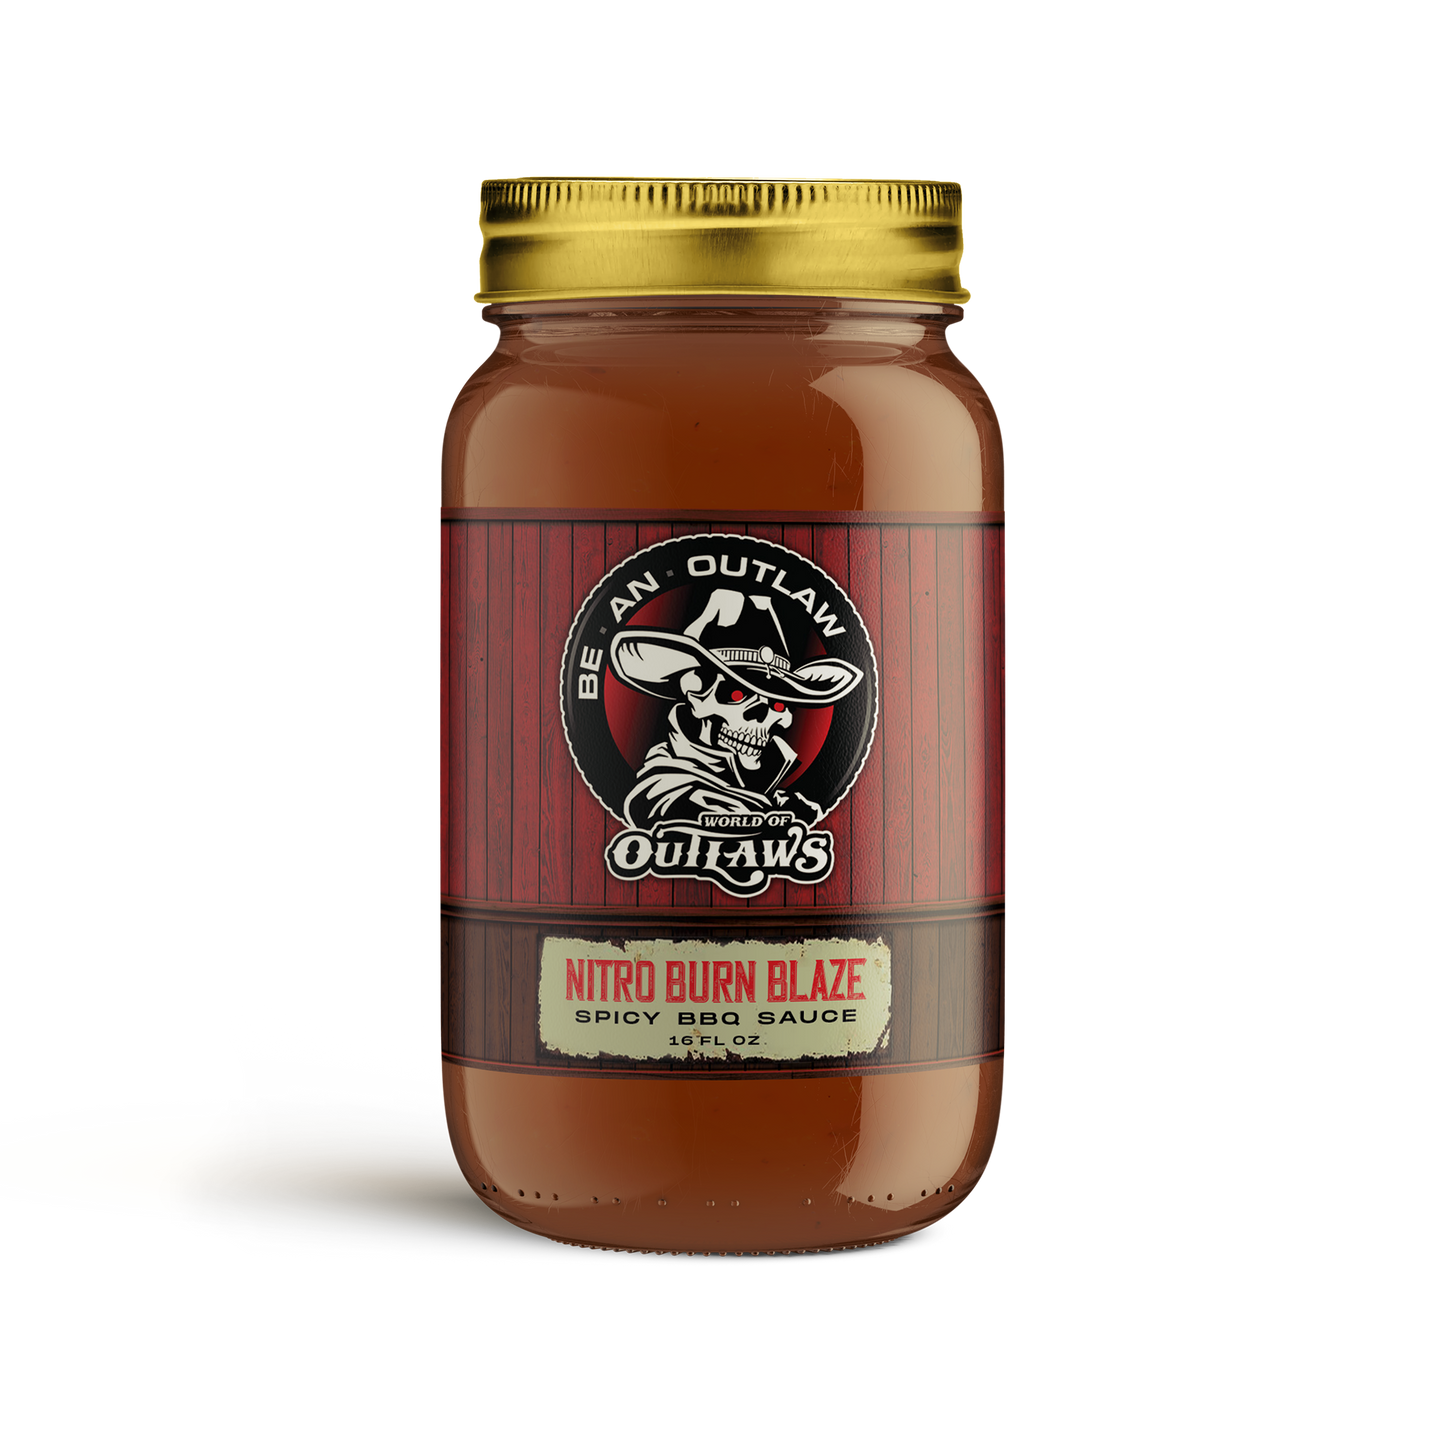 Nitro Burn Blaze : Spicy BBQ Sauce